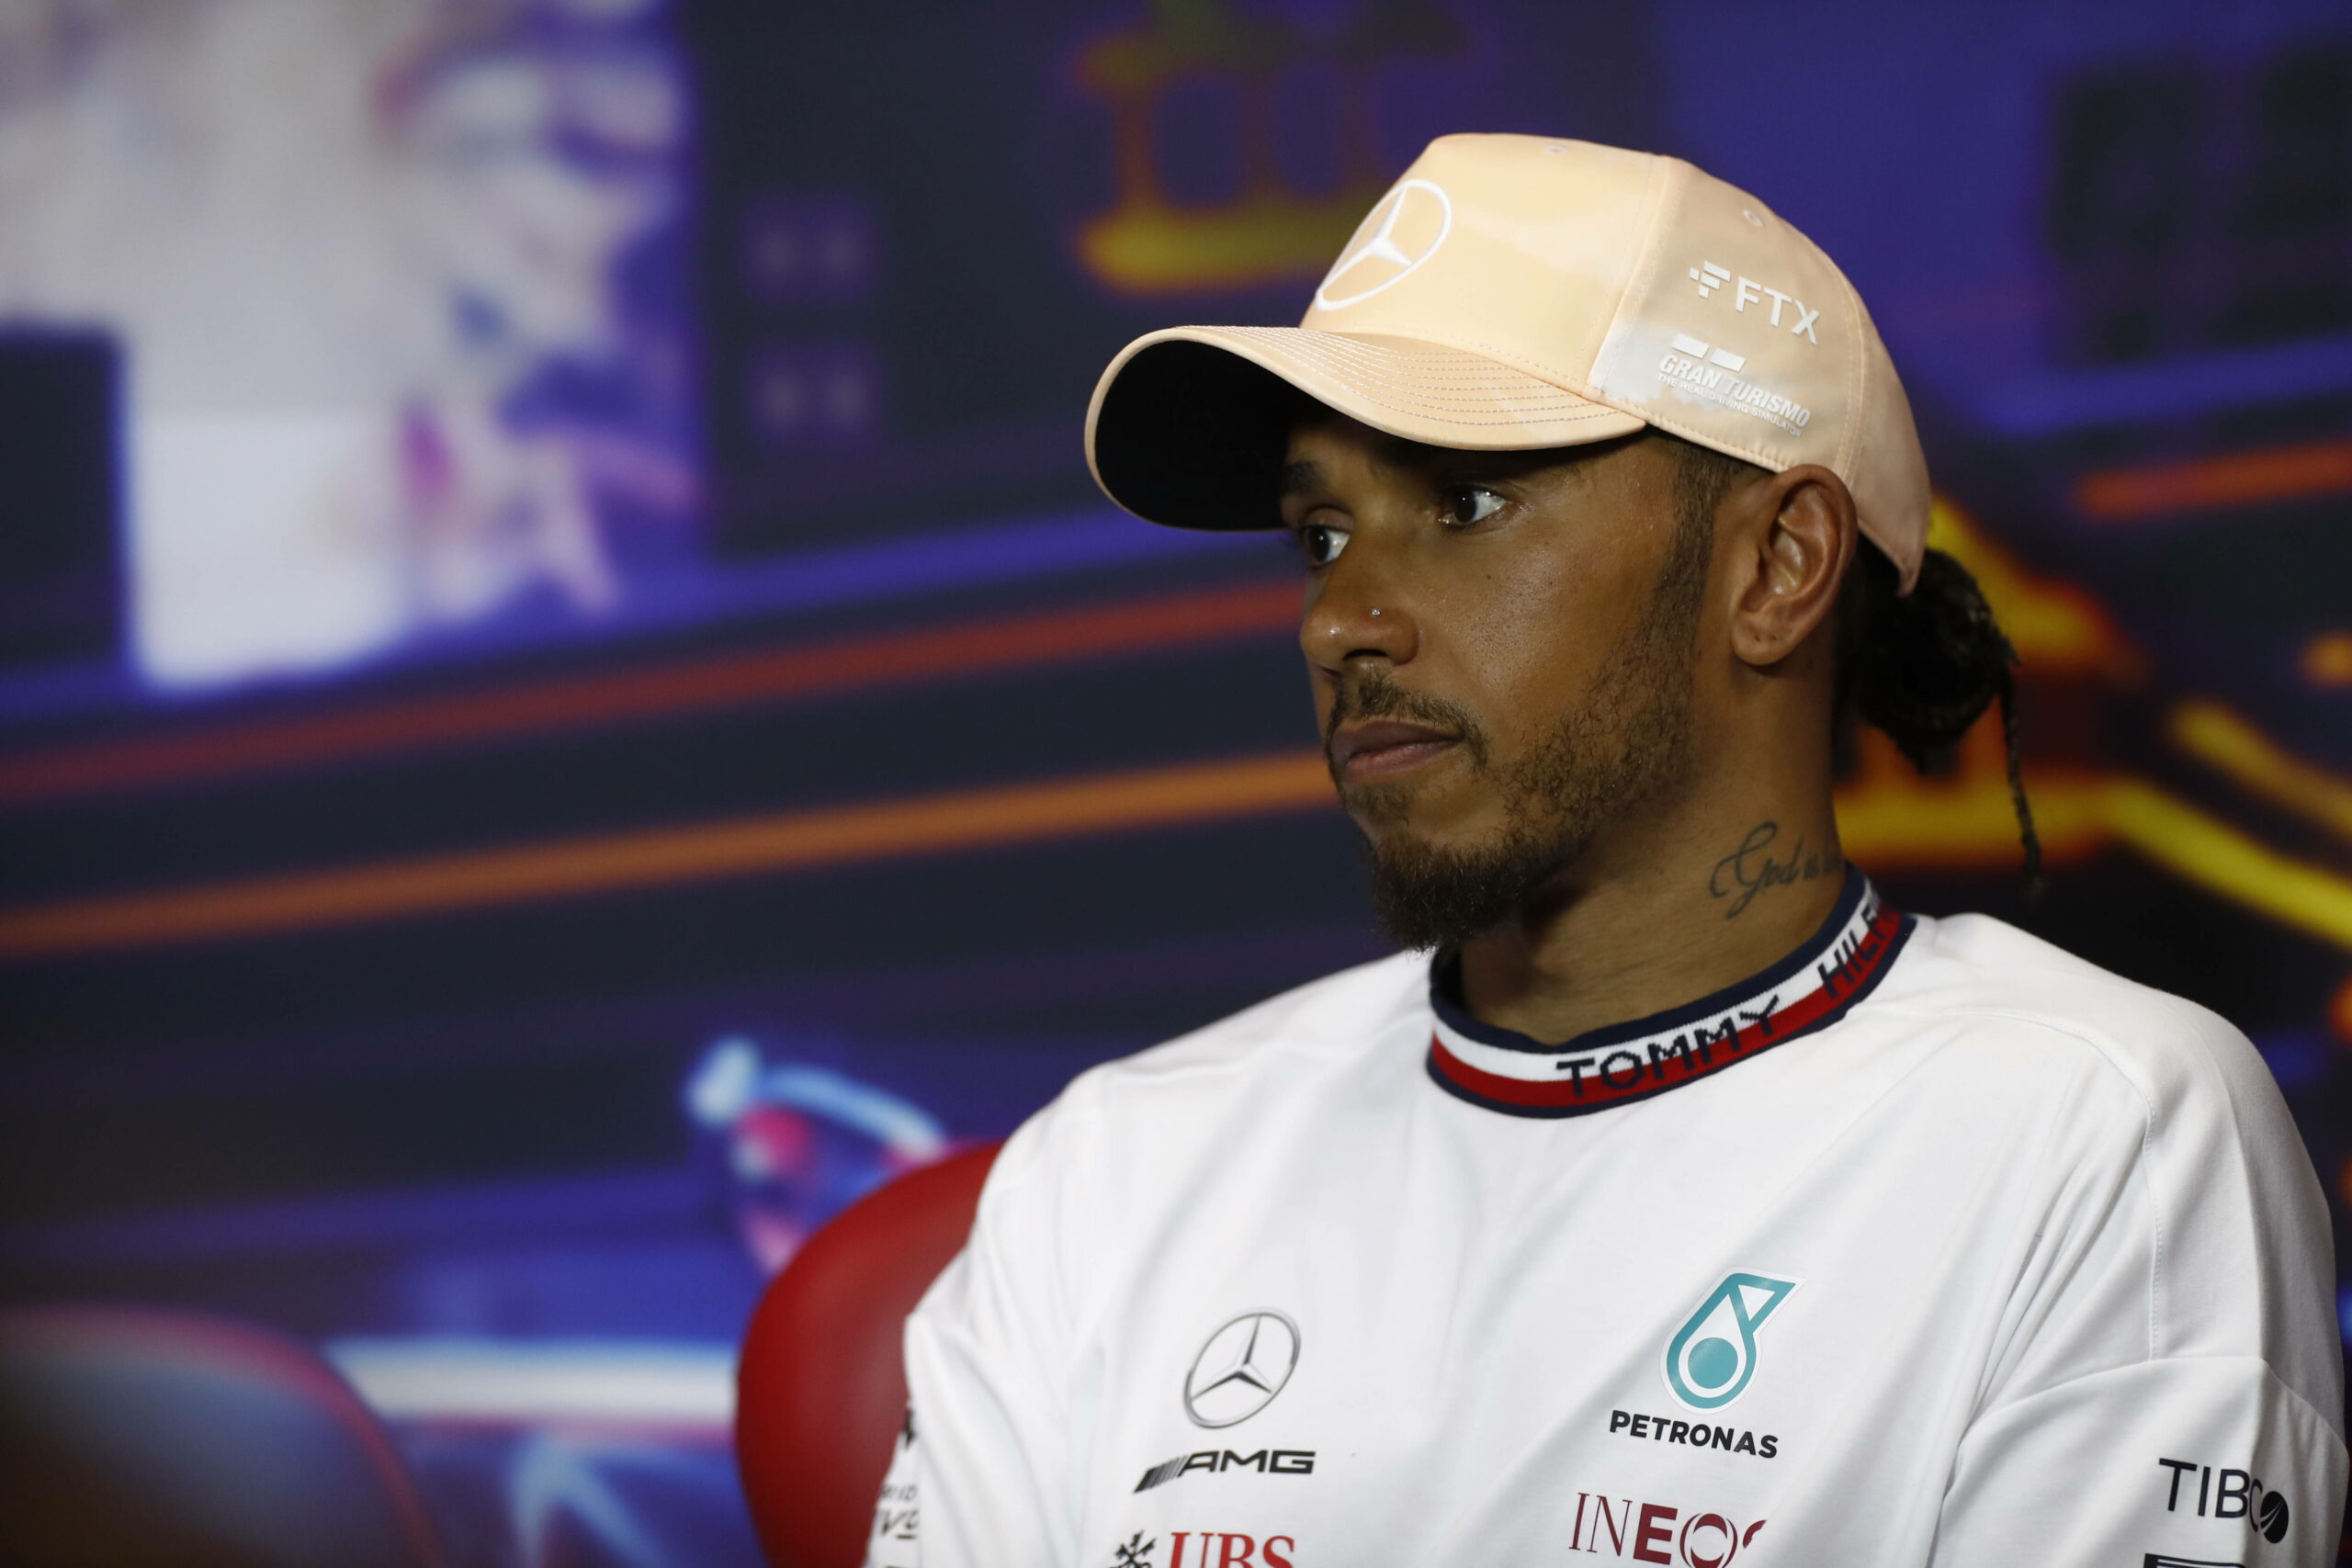 Wegen seines Nasenpiercings wurde das Formel-1-Team von Lewis Hamilton, Mercedes, bestraft.